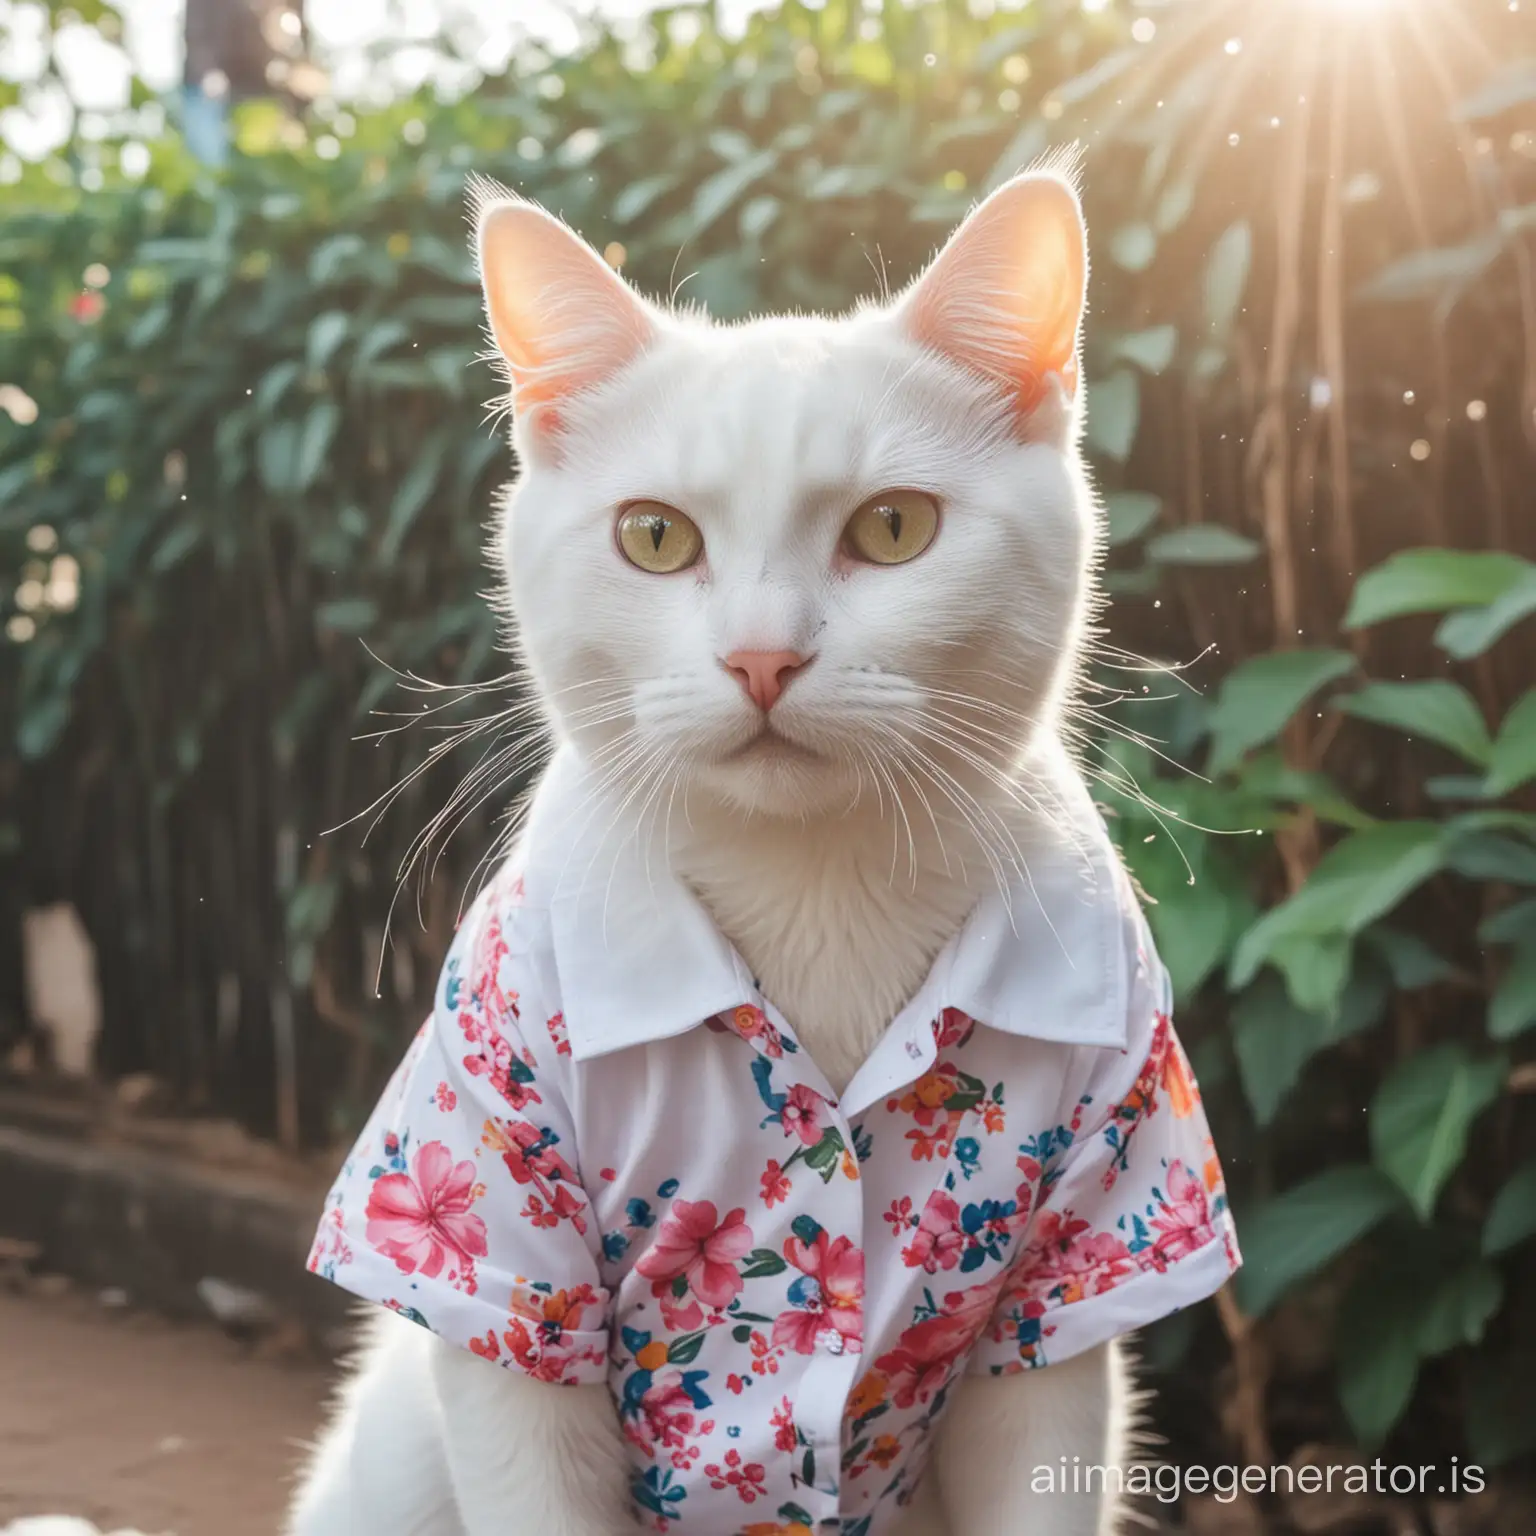 Adorable-White-Cat-Enjoying-Songkran-Festival-in-a-Flower-Shirt